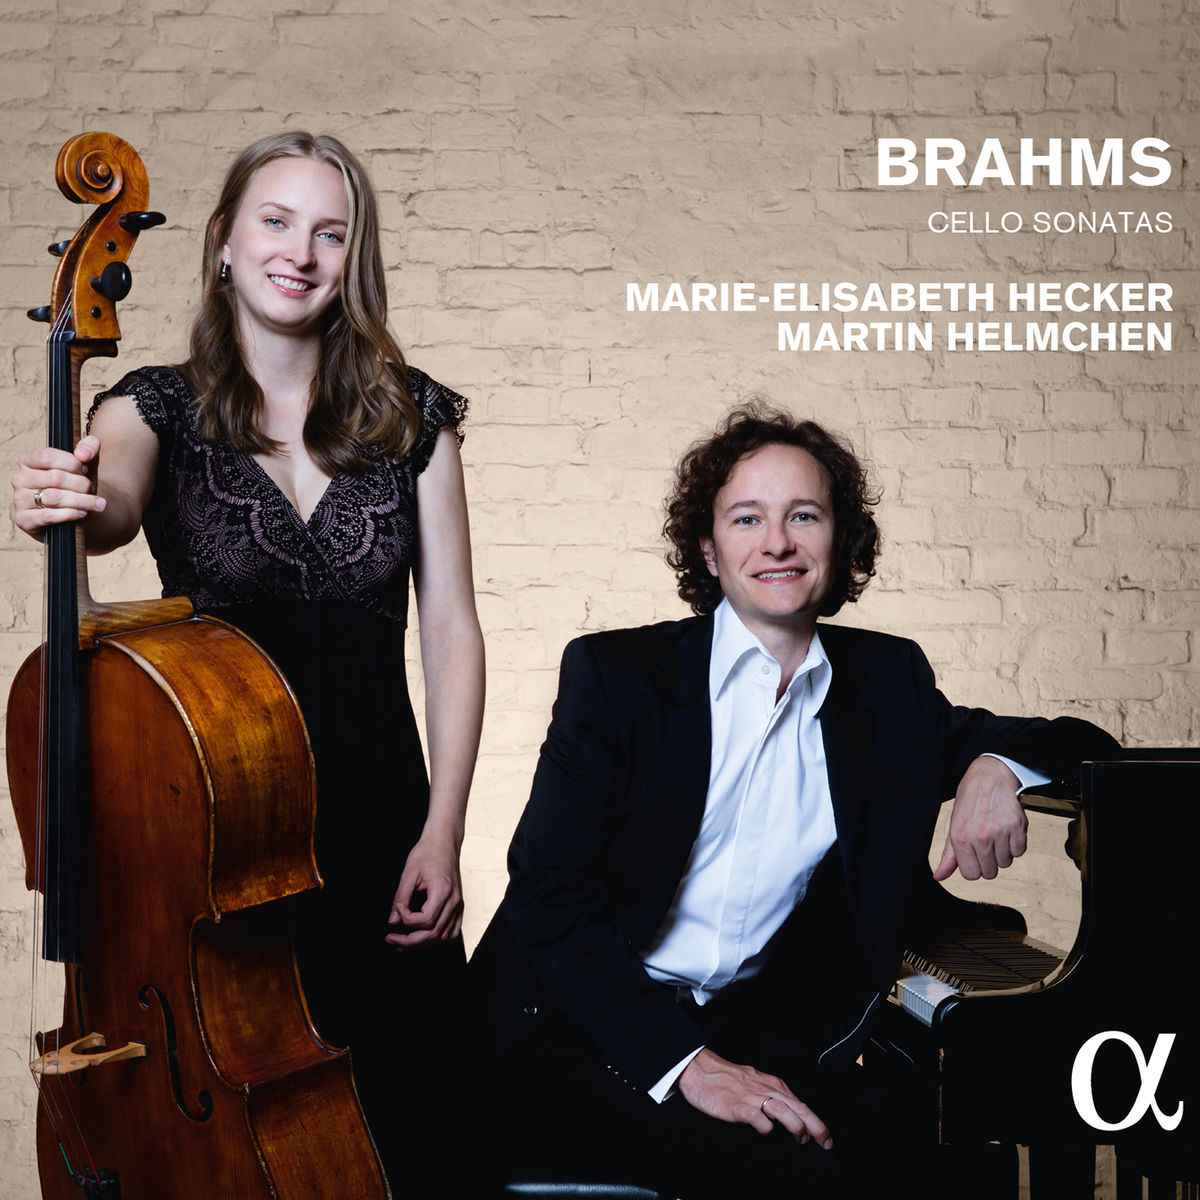 Marie-Elisabeth Hecker & Martin Helmchen - Brahms: Cello Sonatas (2016) [FLAC 24bit/96kHz]